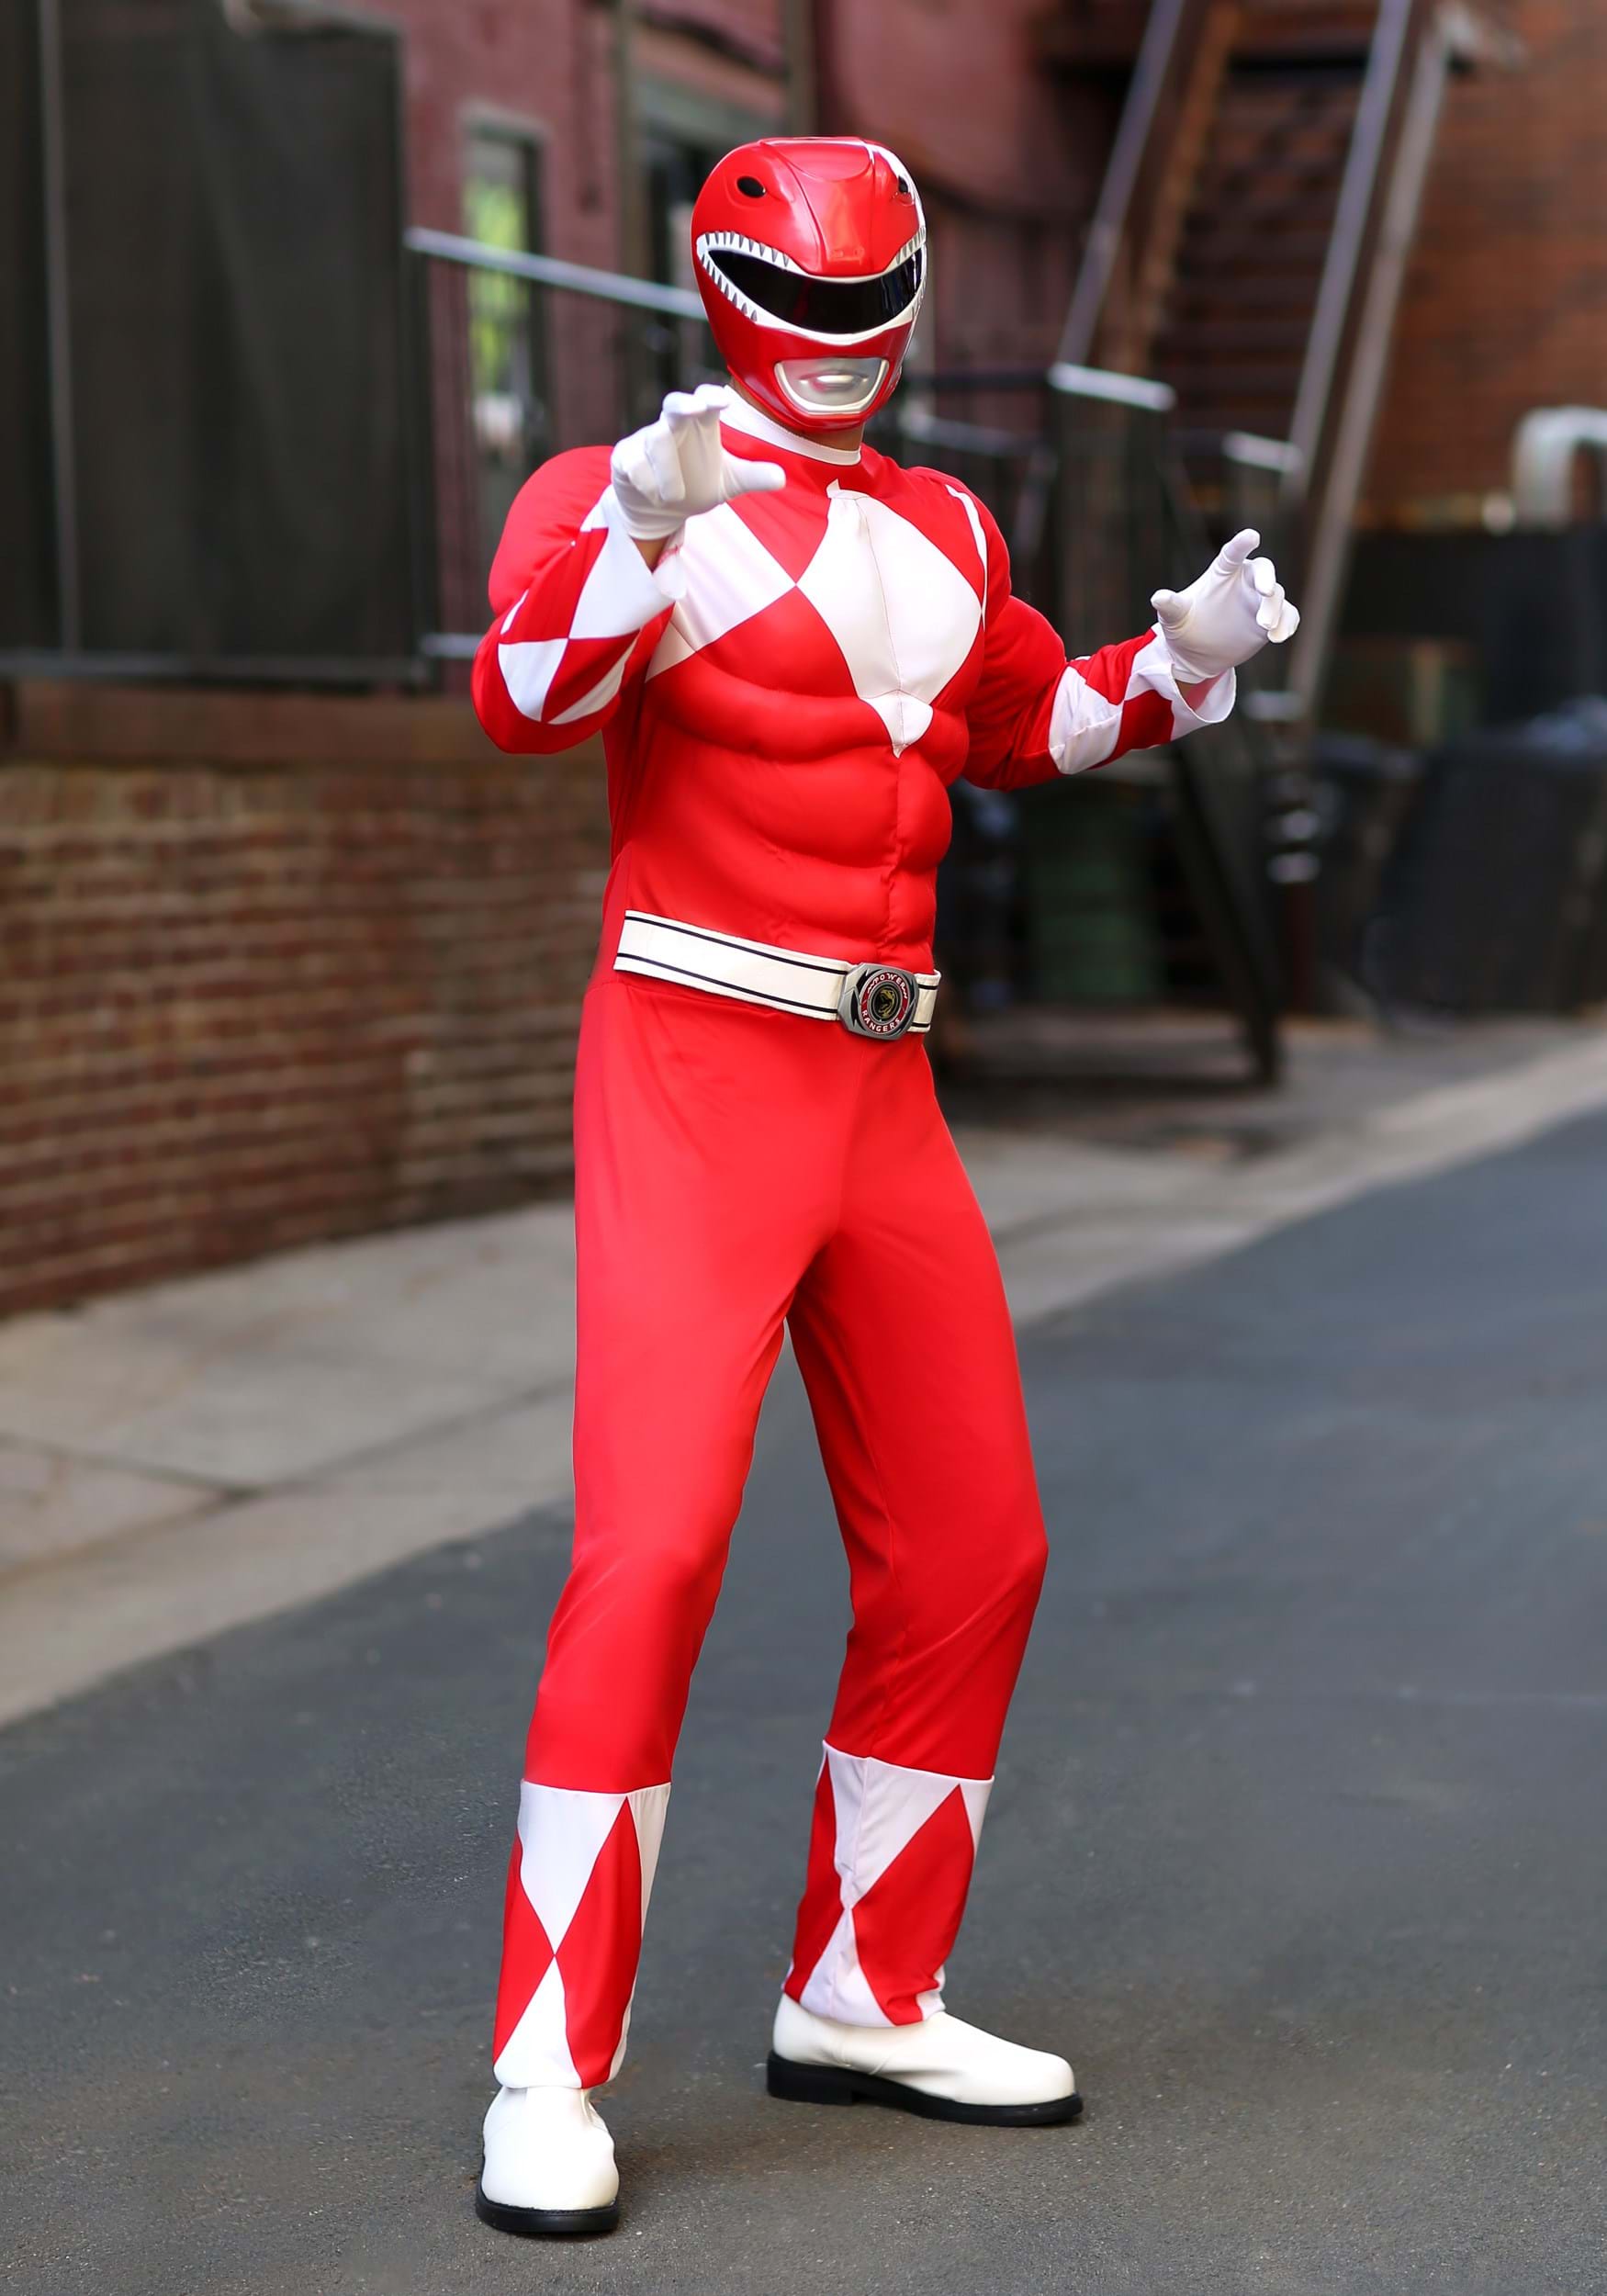 Men’s Power Rangers Red Ranger Muscle Costume